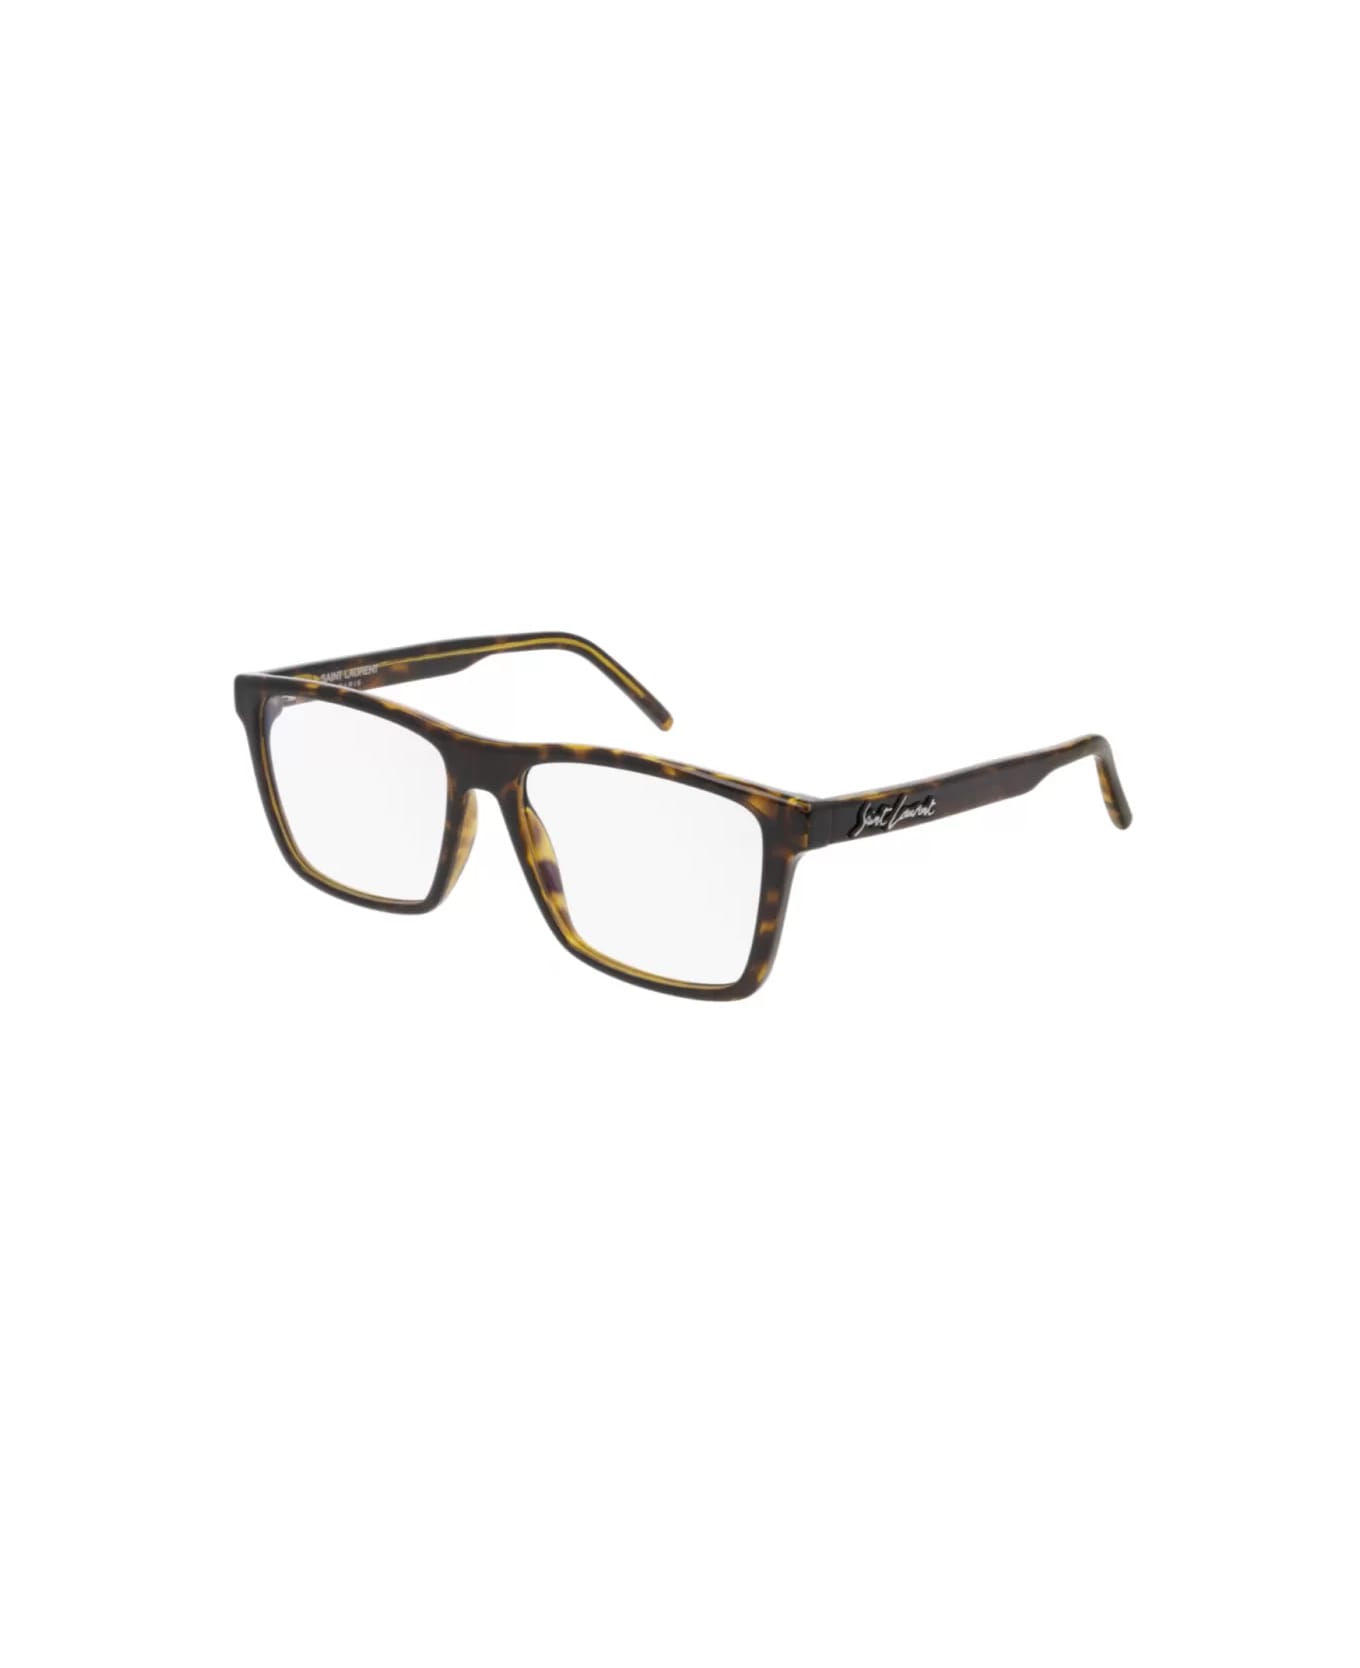 Saint Laurent Eyewear SL 337 002 Glasses - Tartarugato アイウェア